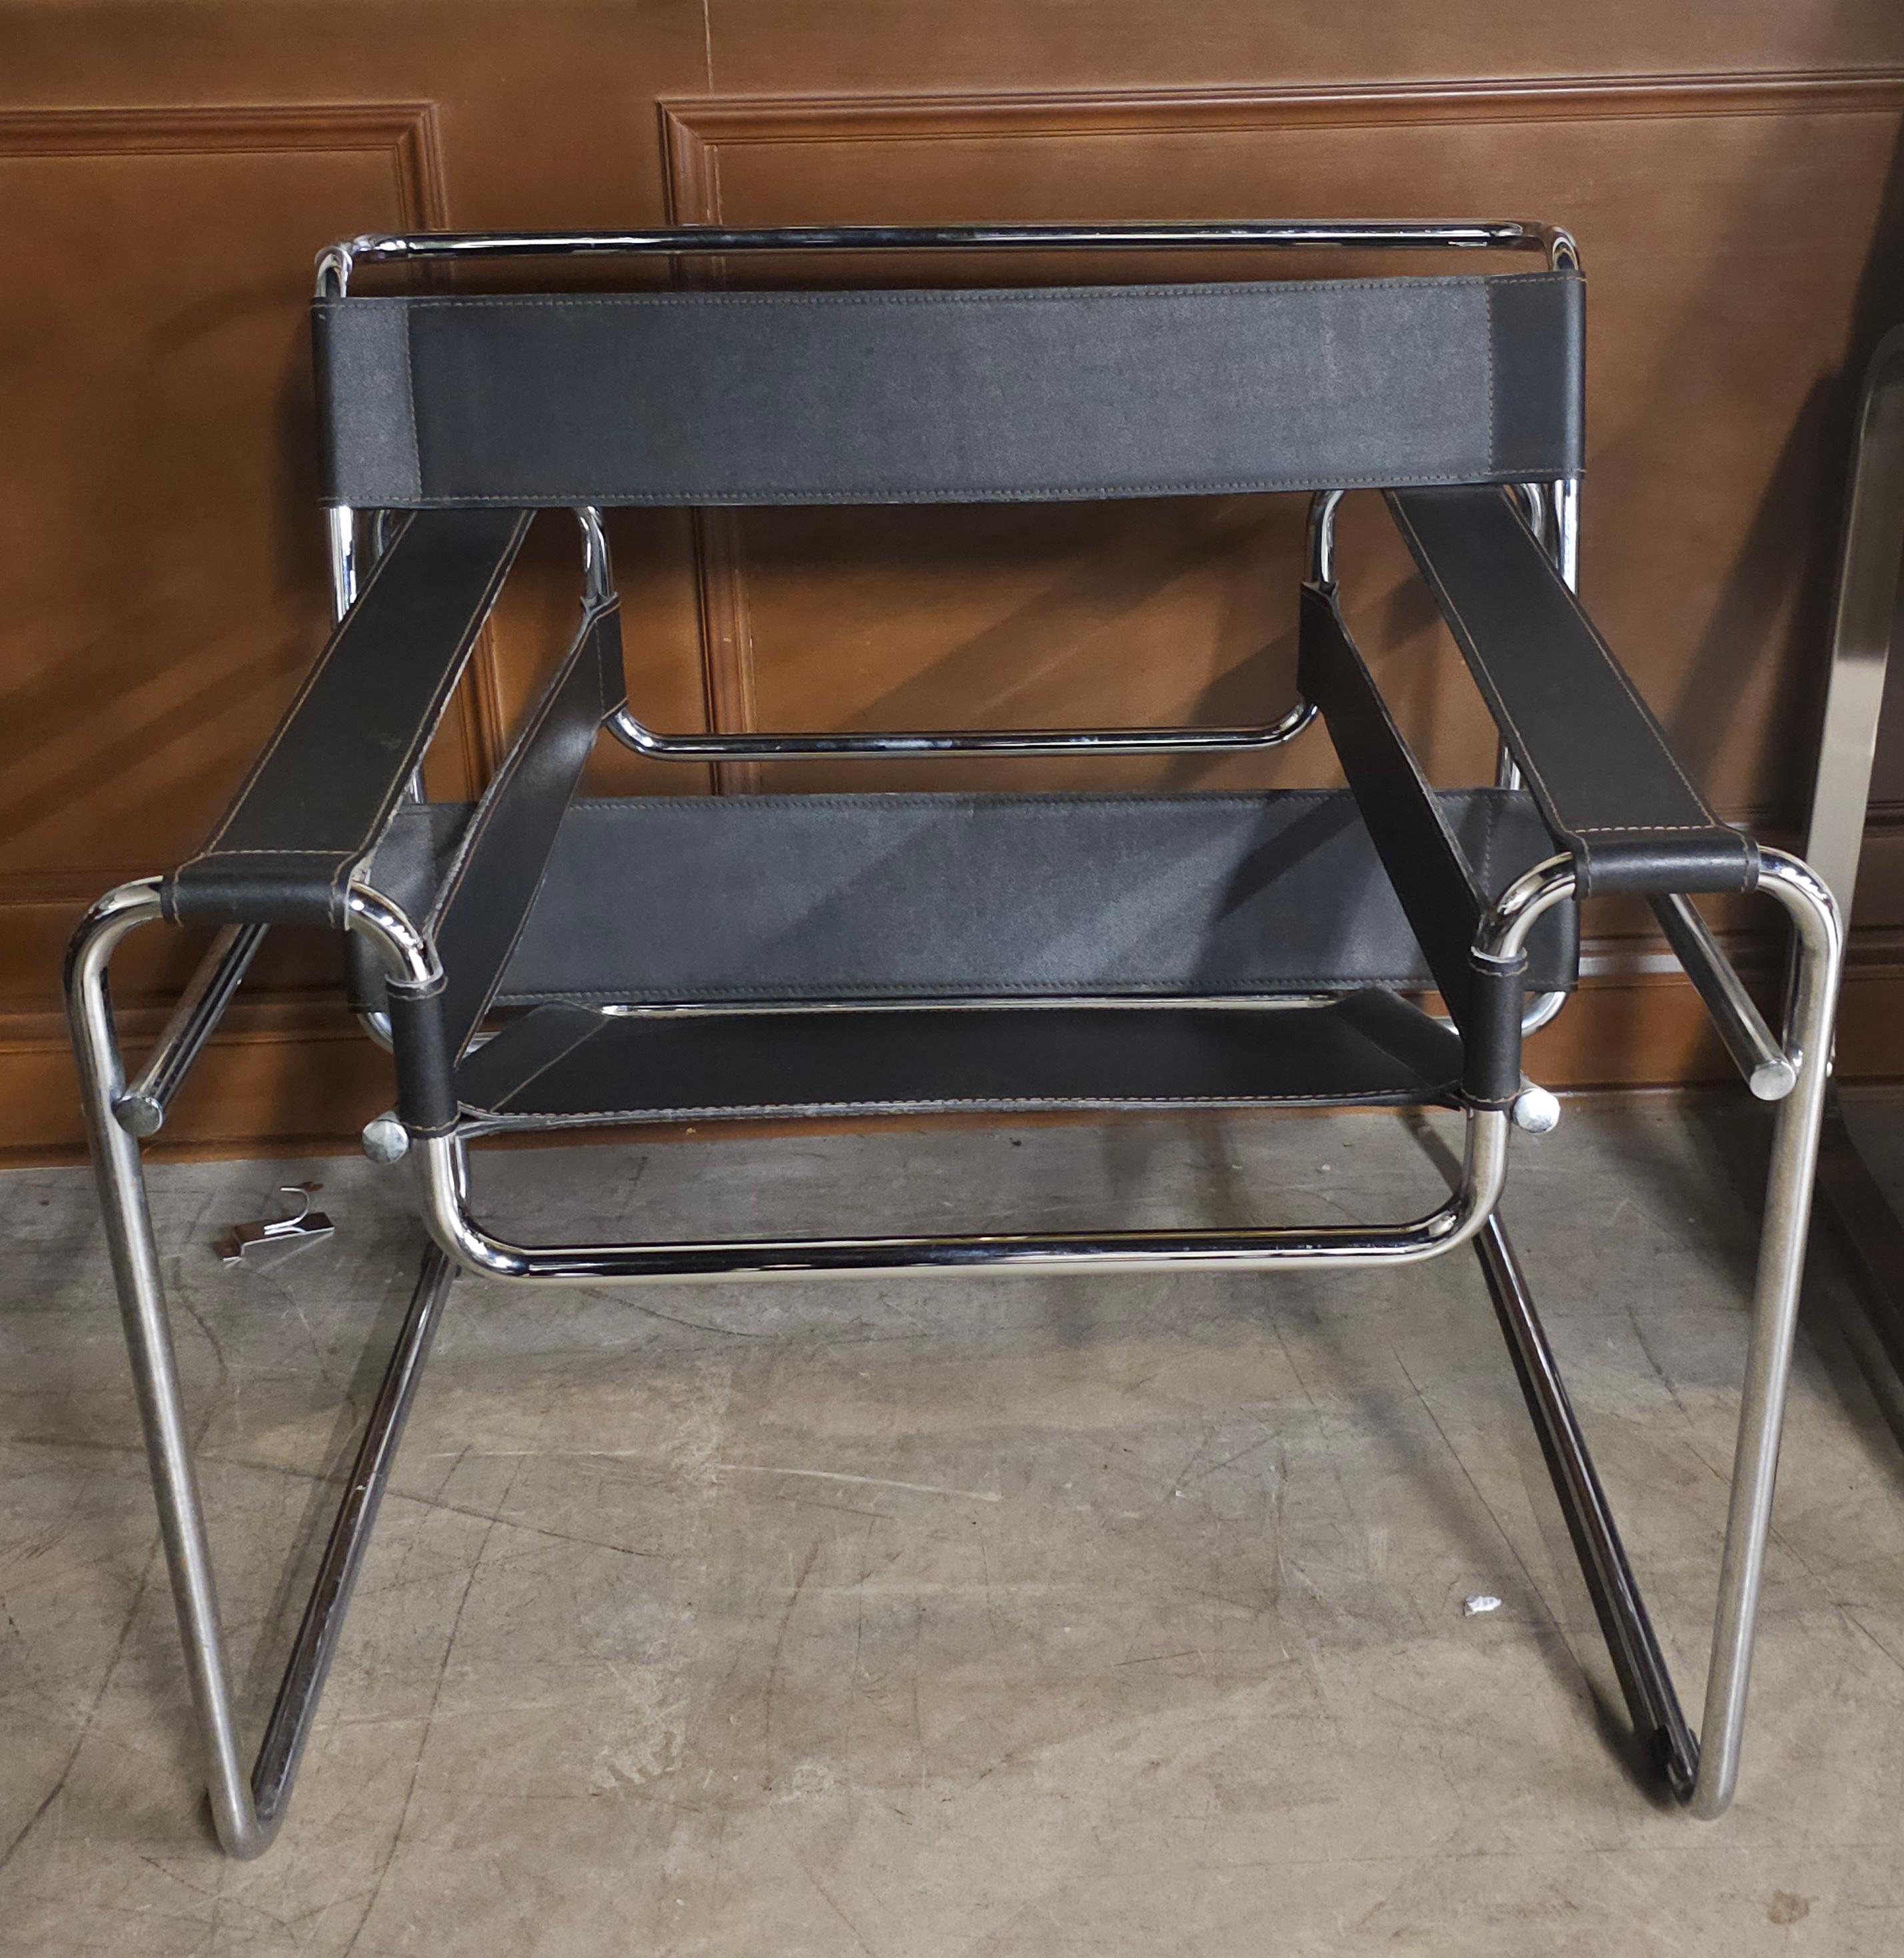 Ein Paar Marcel Brewer Chrom Metall und Leder Wassily Stil Lounge Stühle. Sehr bequem und in gutem Zustand. 